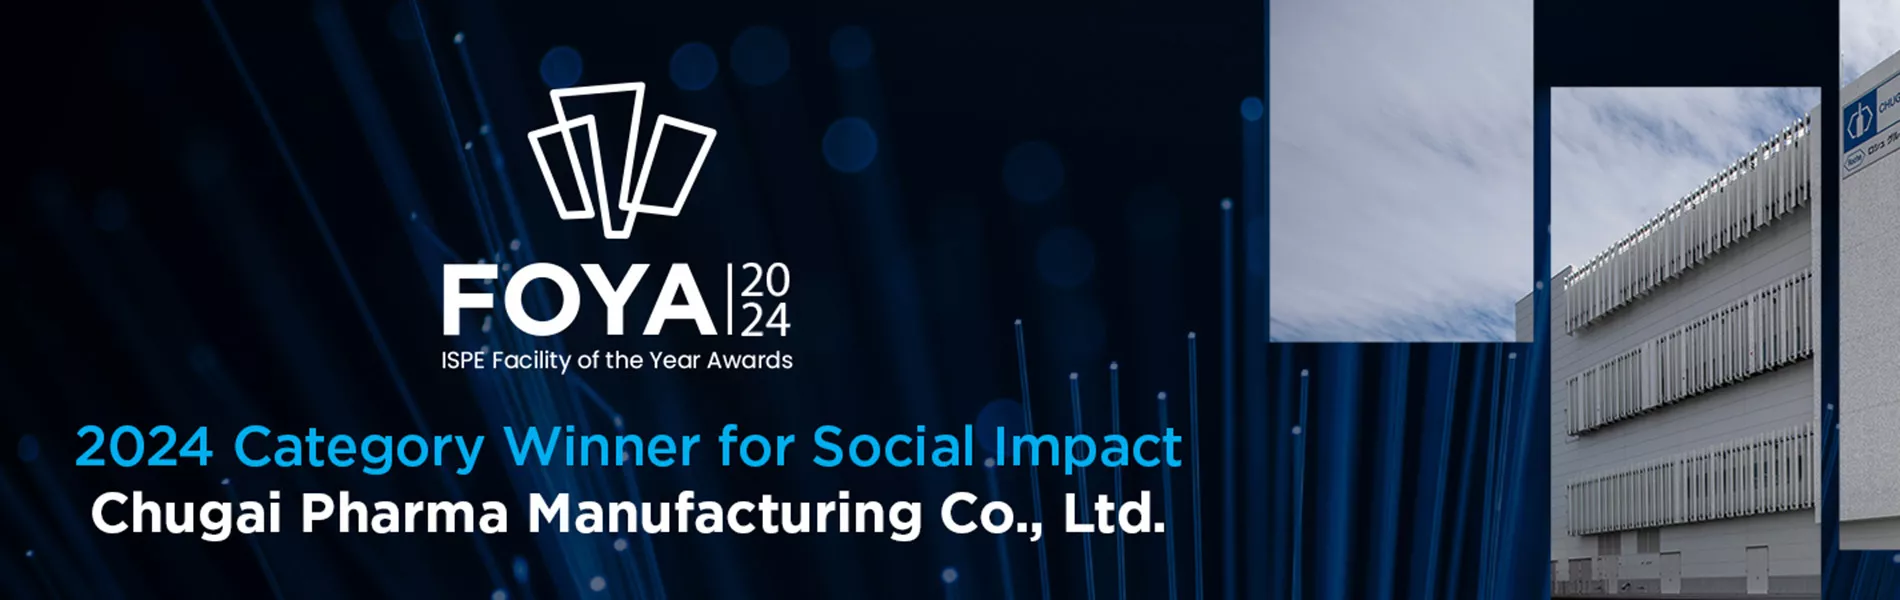 2024 ISPE FOYA Category Winner for Social Impact